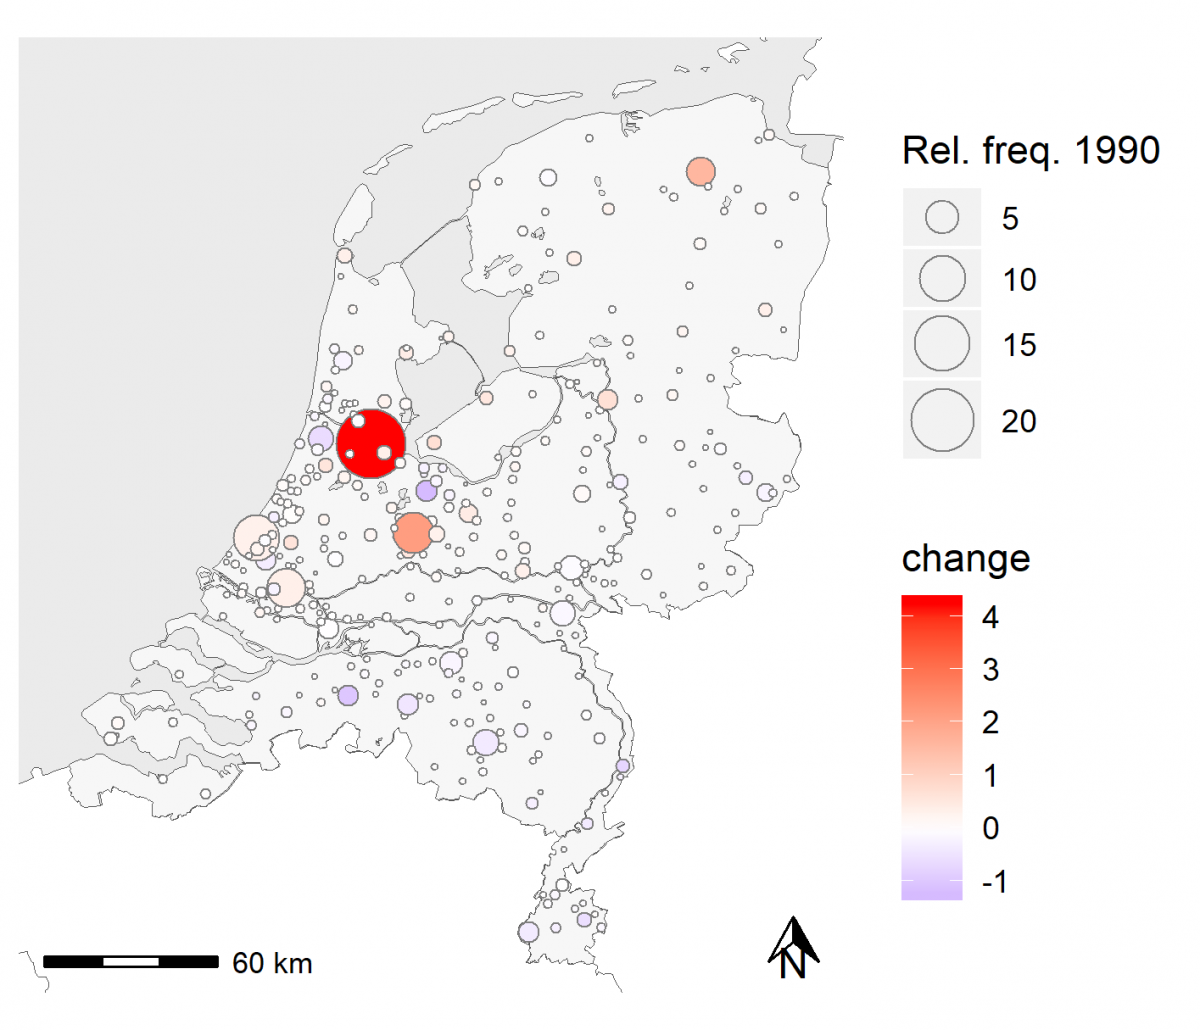 Figure 2 - Change in the relative coverage of Dutch cities in de Volkskrant 1960-1990